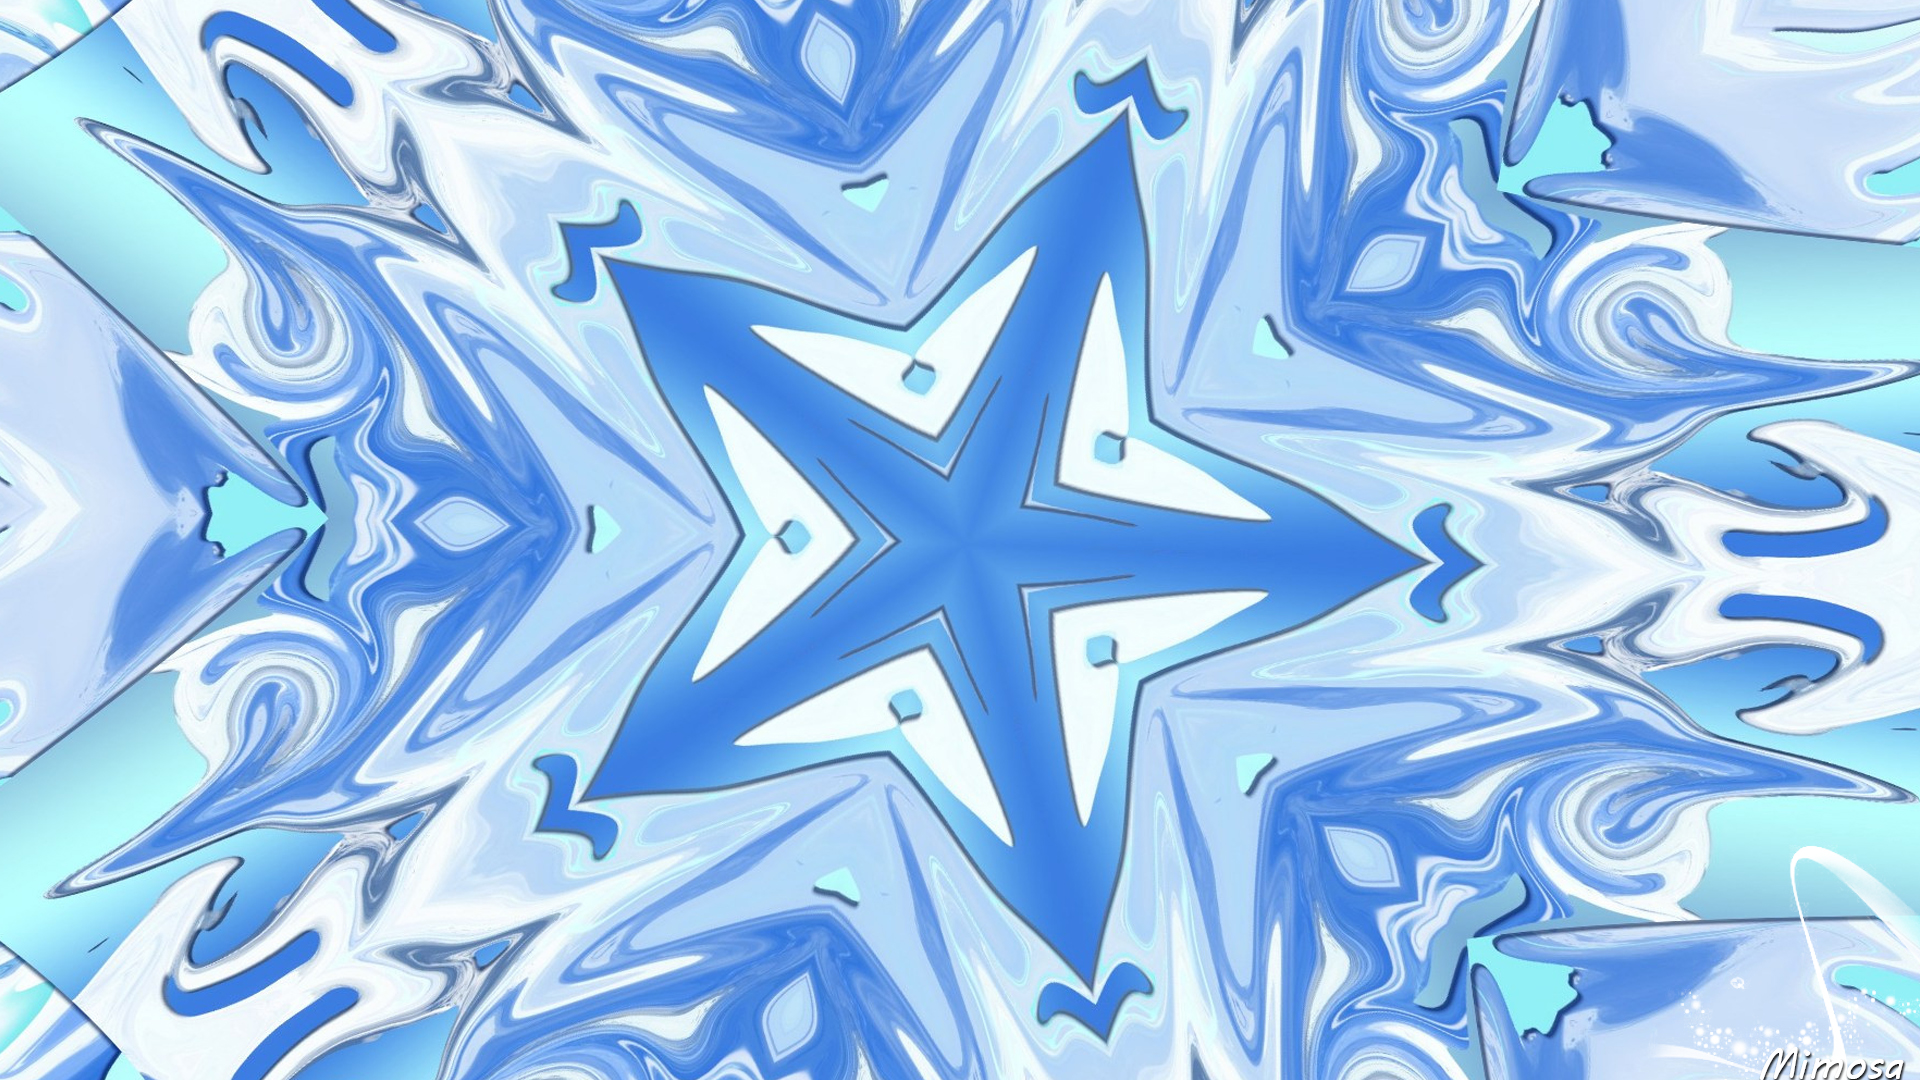 Artistic Digital Art Pattern Blue Star 1920x1080